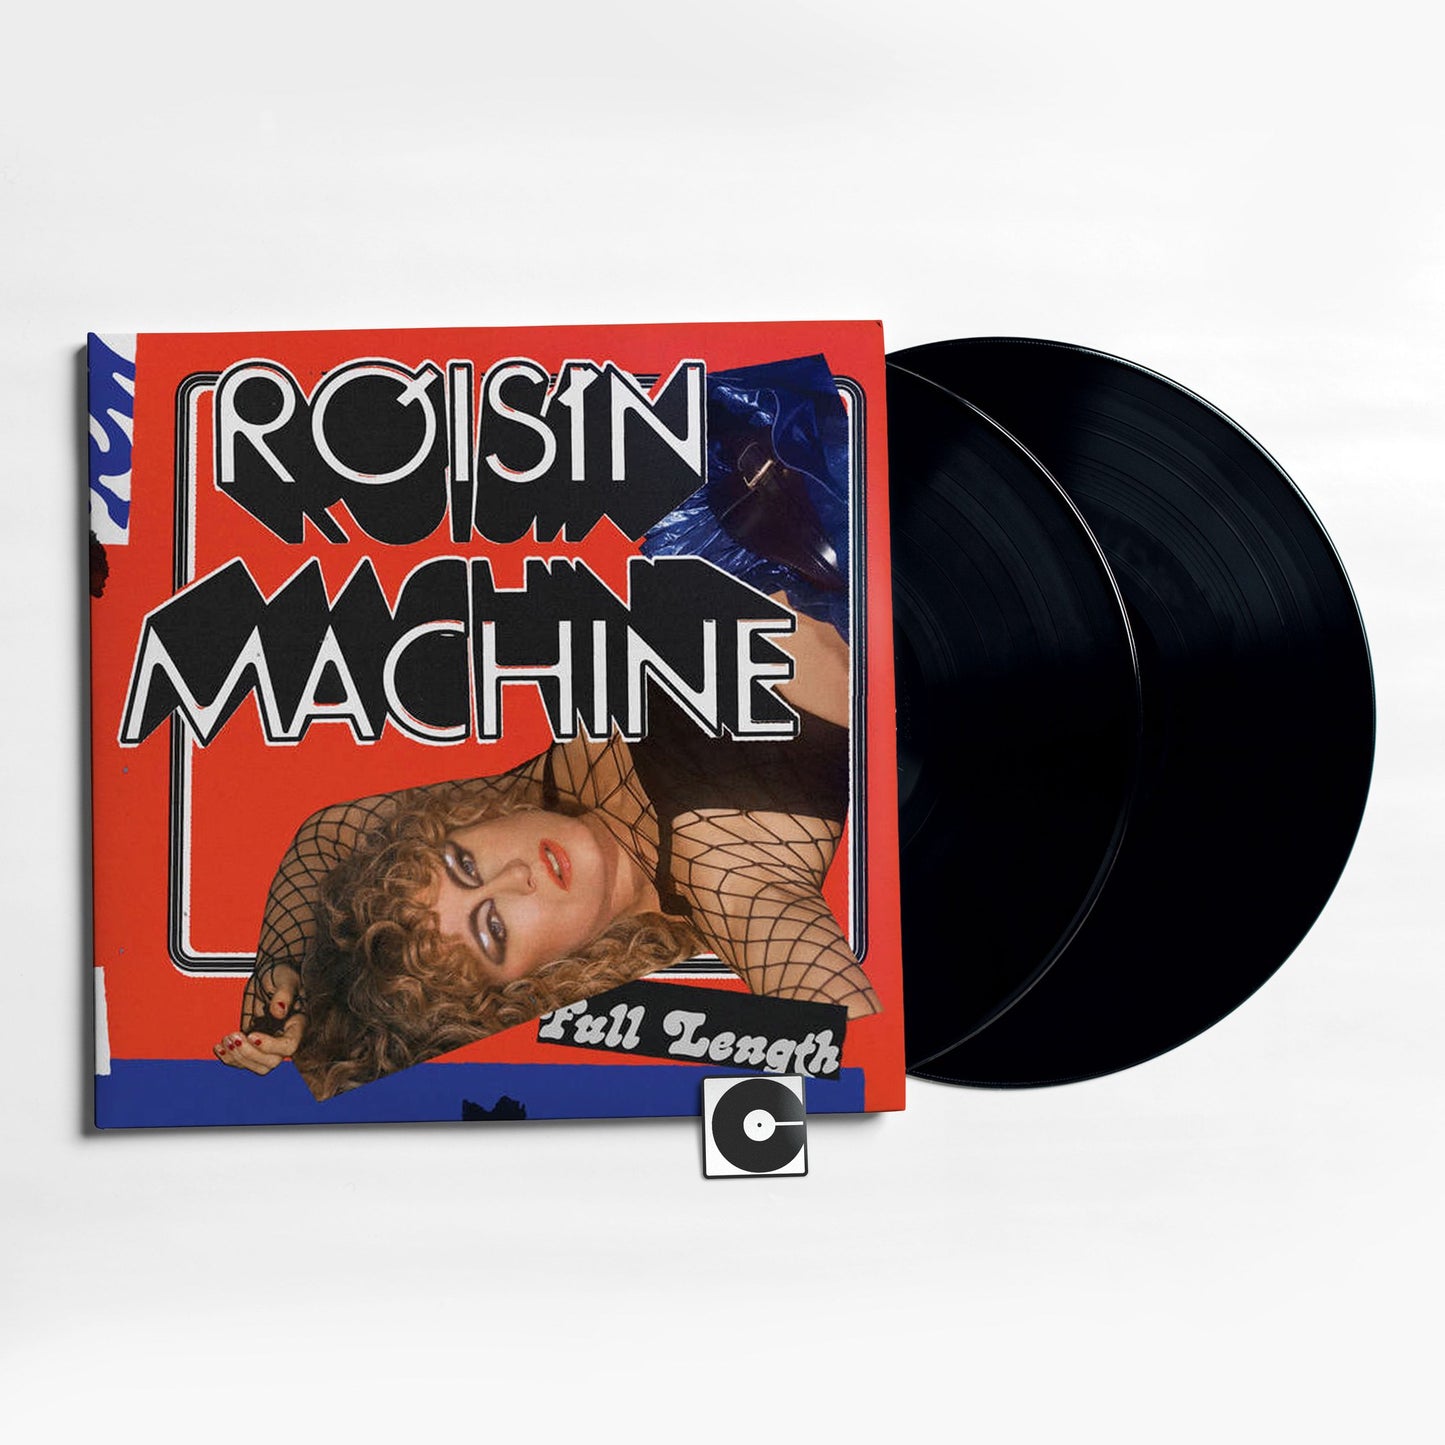 Roisin Murphy - "Roisin Machine"